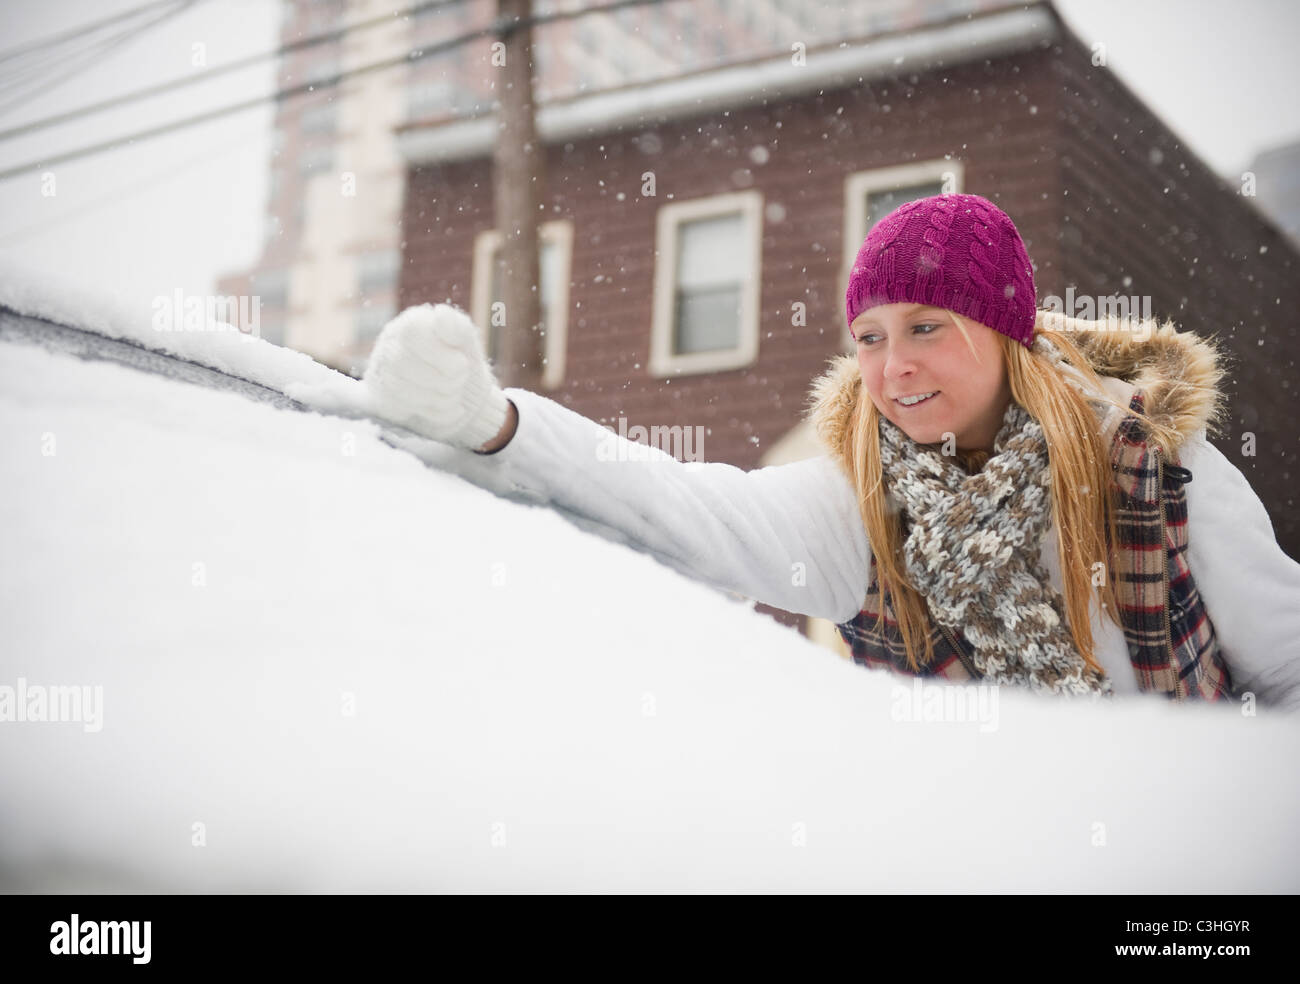 Frau räumt mit einem Besen Schnee aus einem Auto 4543491 Stock